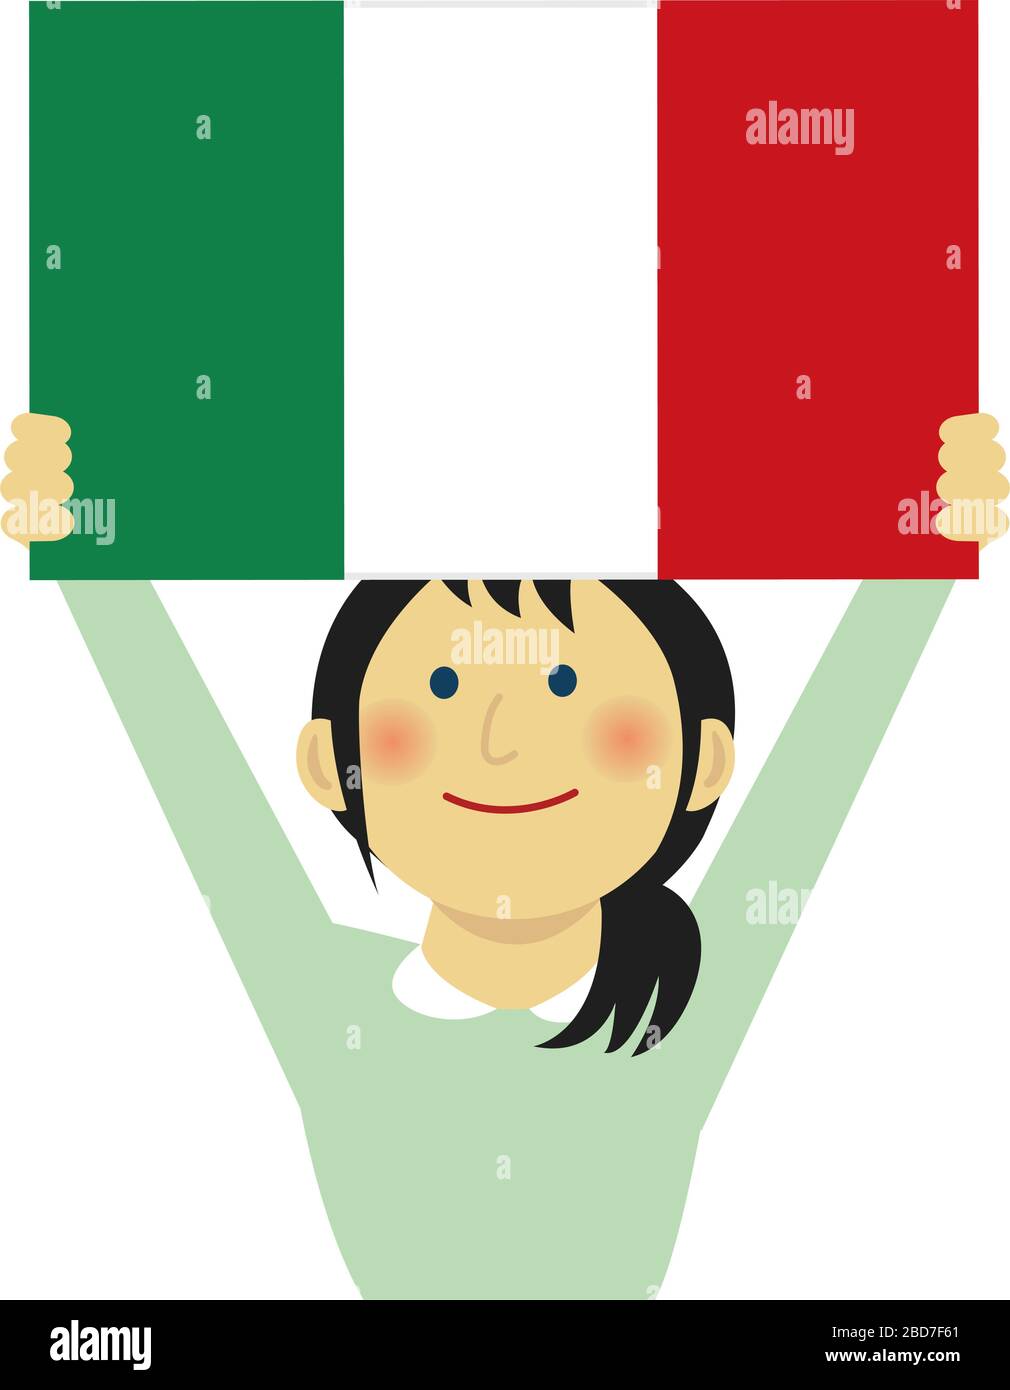 Handgezeichnet skizzenhafte Italien Flagge auf der Flagge Stange. Drei  Farbe Flagge . Stock Vektor Illustration isoliert auf weißem Hintergrund  Stock-Vektorgrafik - Alamy